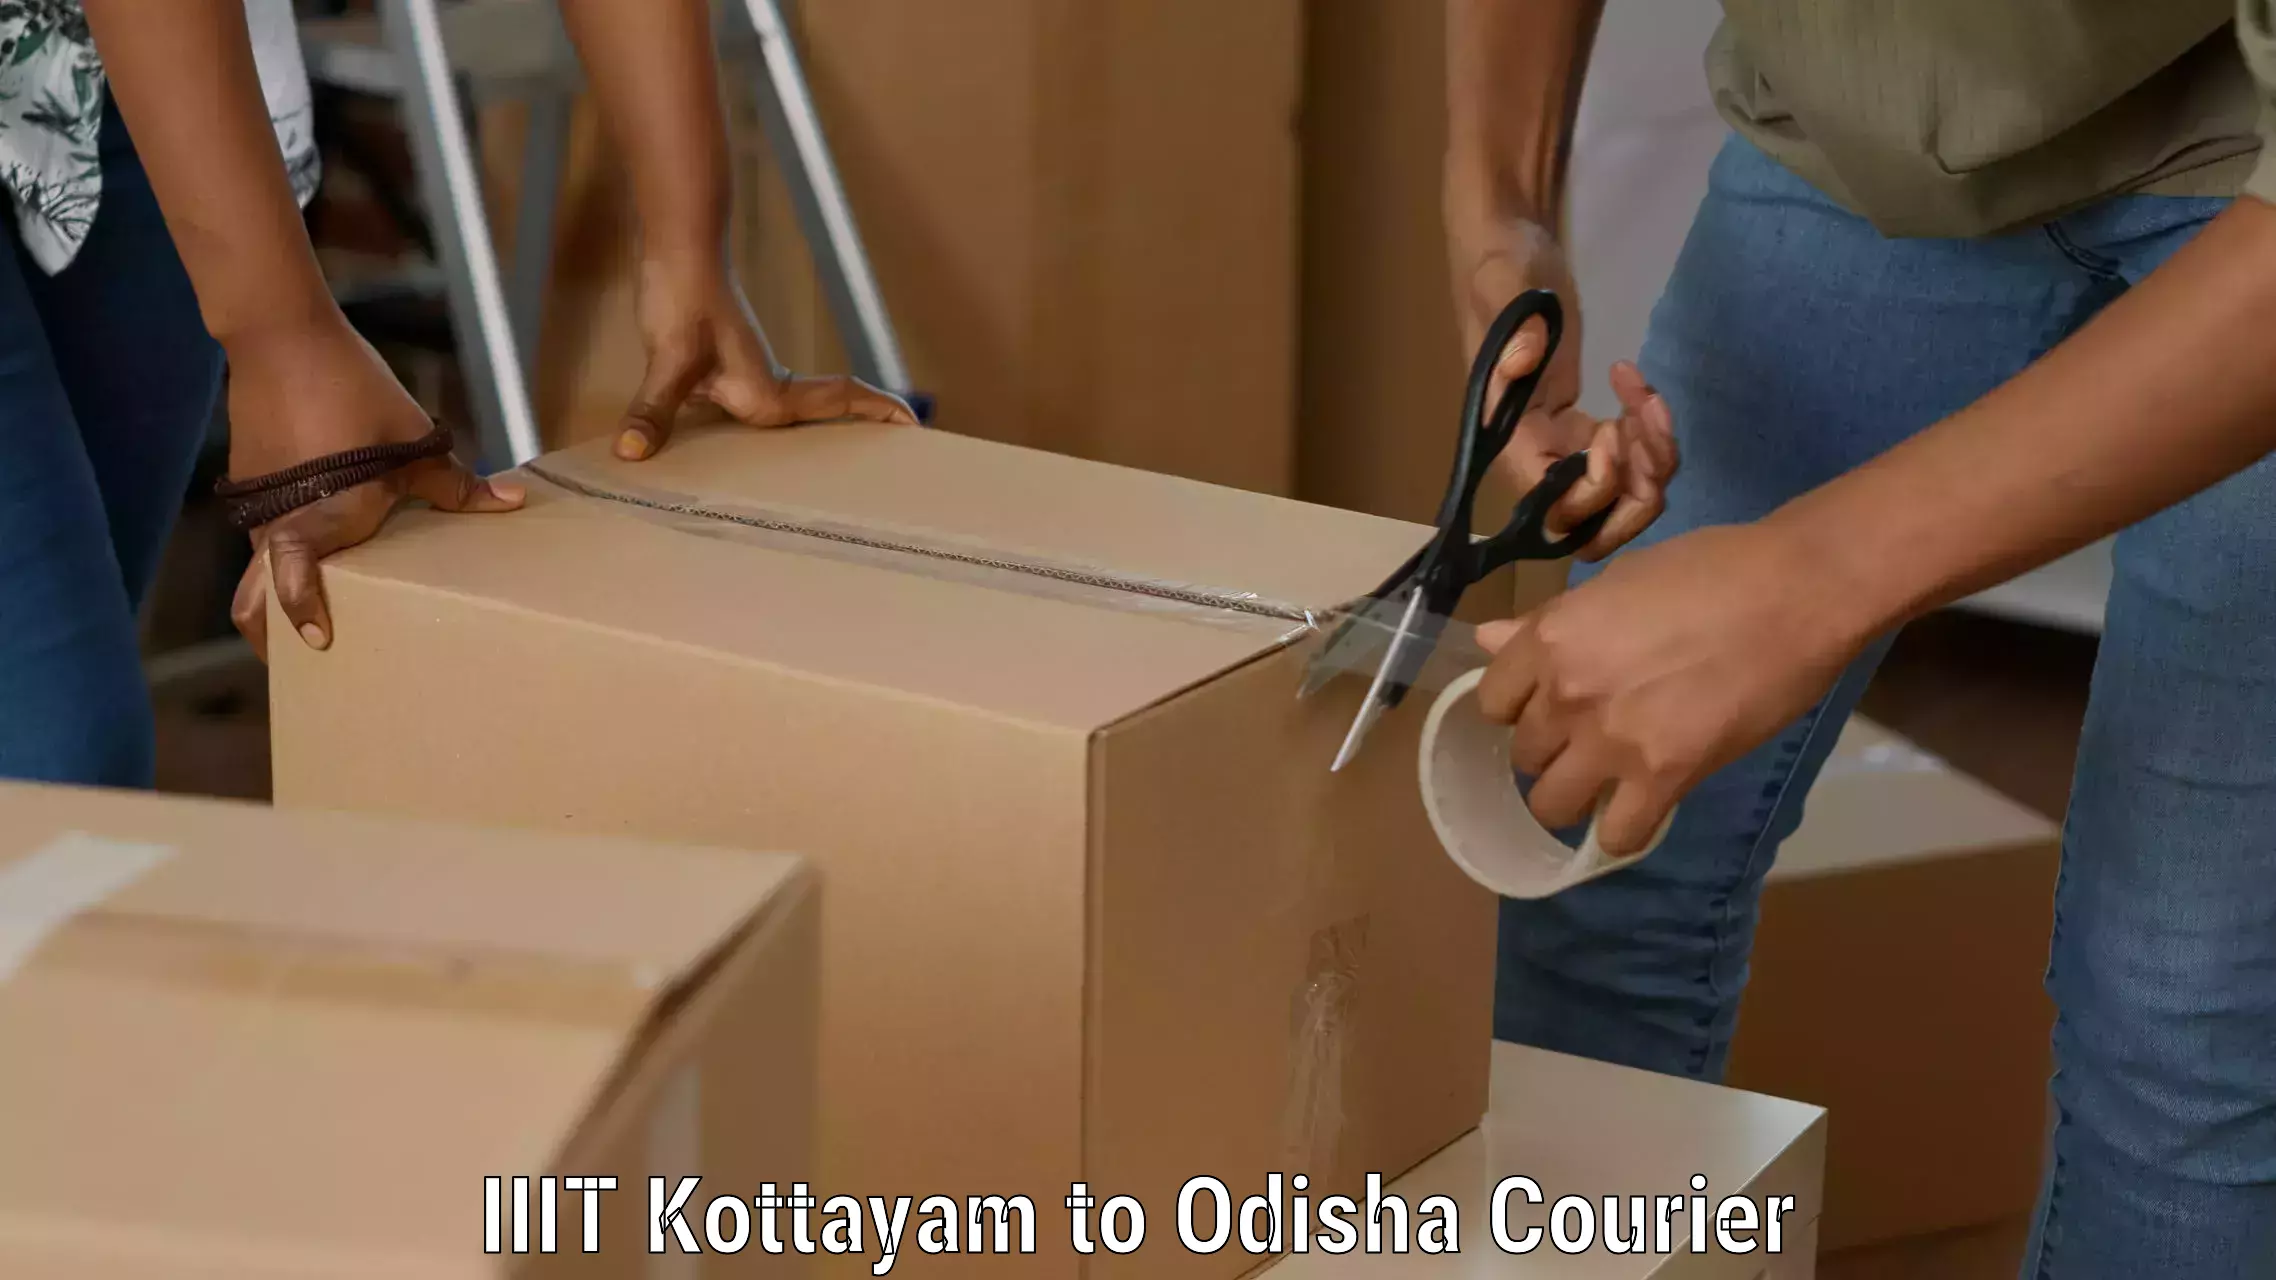 Smart shipping technology IIIT Kottayam to Sohela